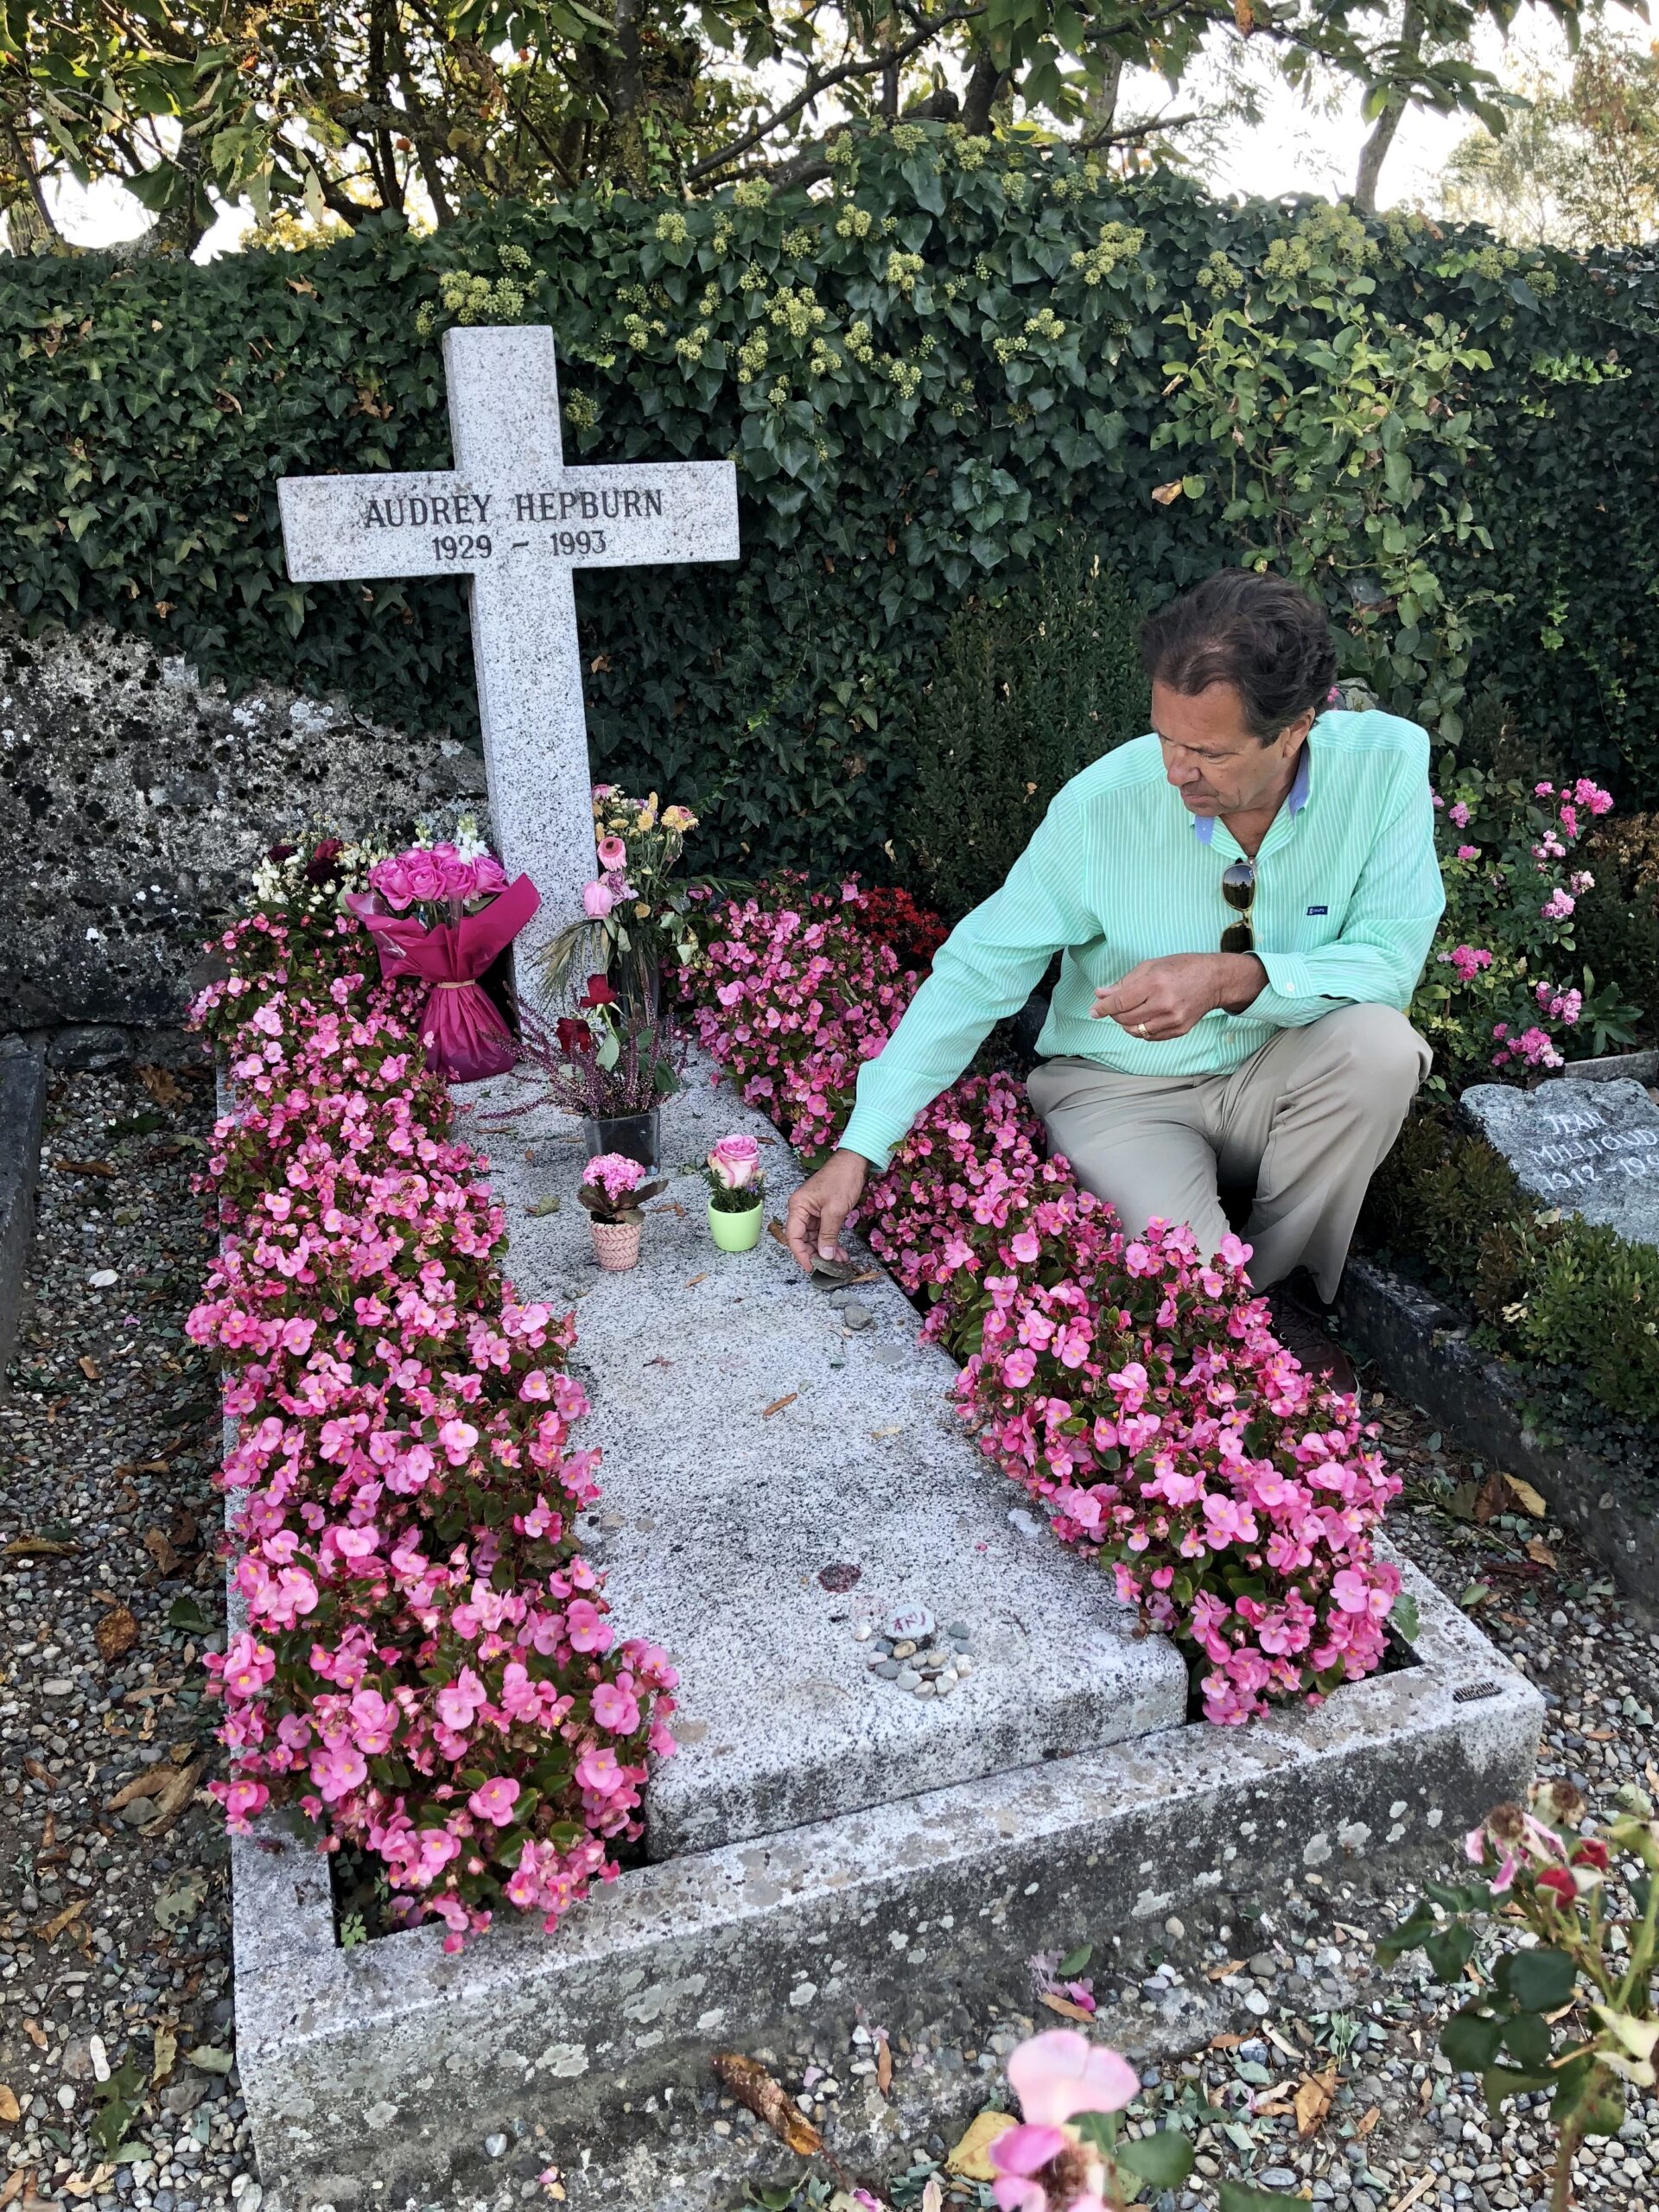 The grave of Audrey Hepburn